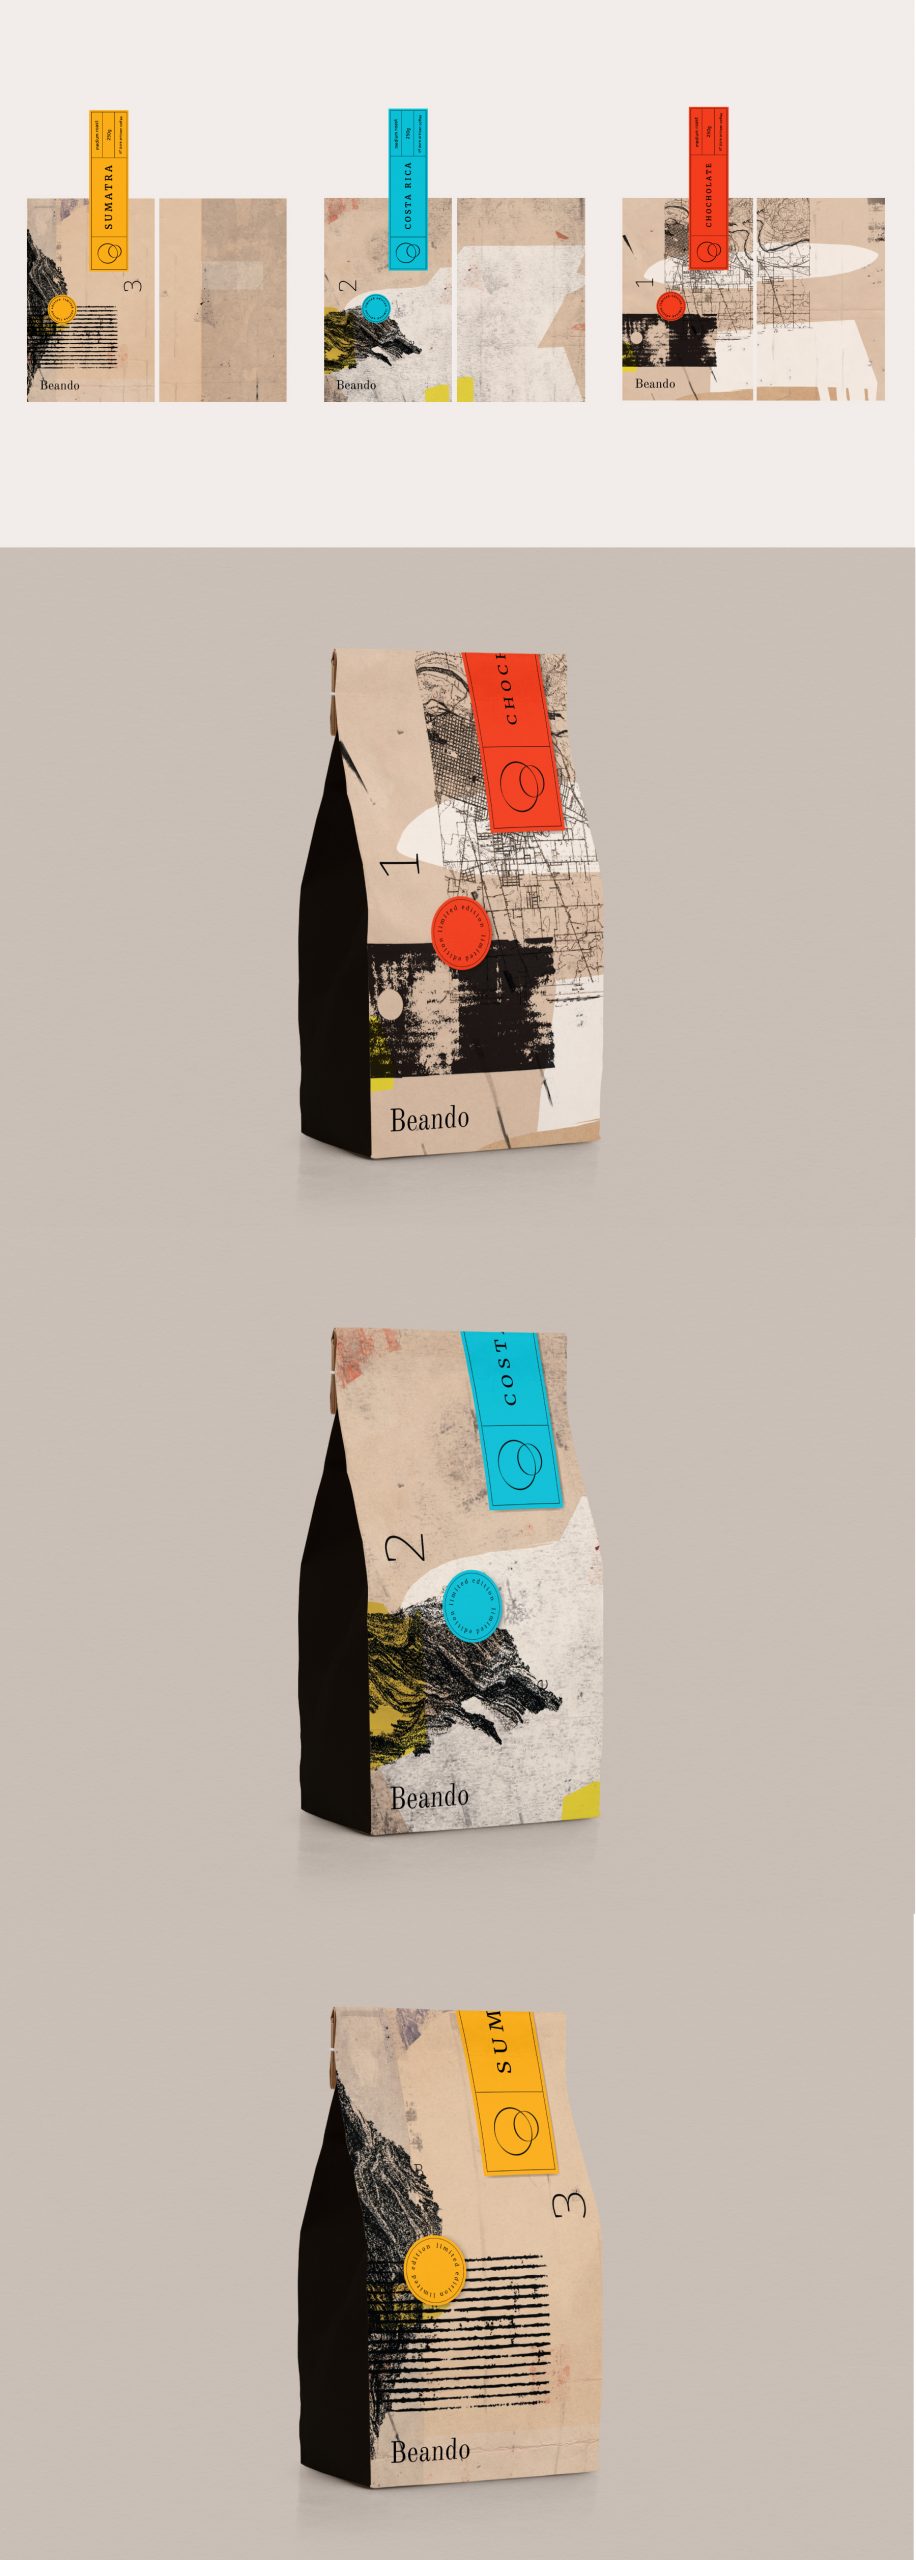 02 Dizajn serije pakovanja Beando Kafe Costa Rica, Sumatra, Chocolate Hazelnut